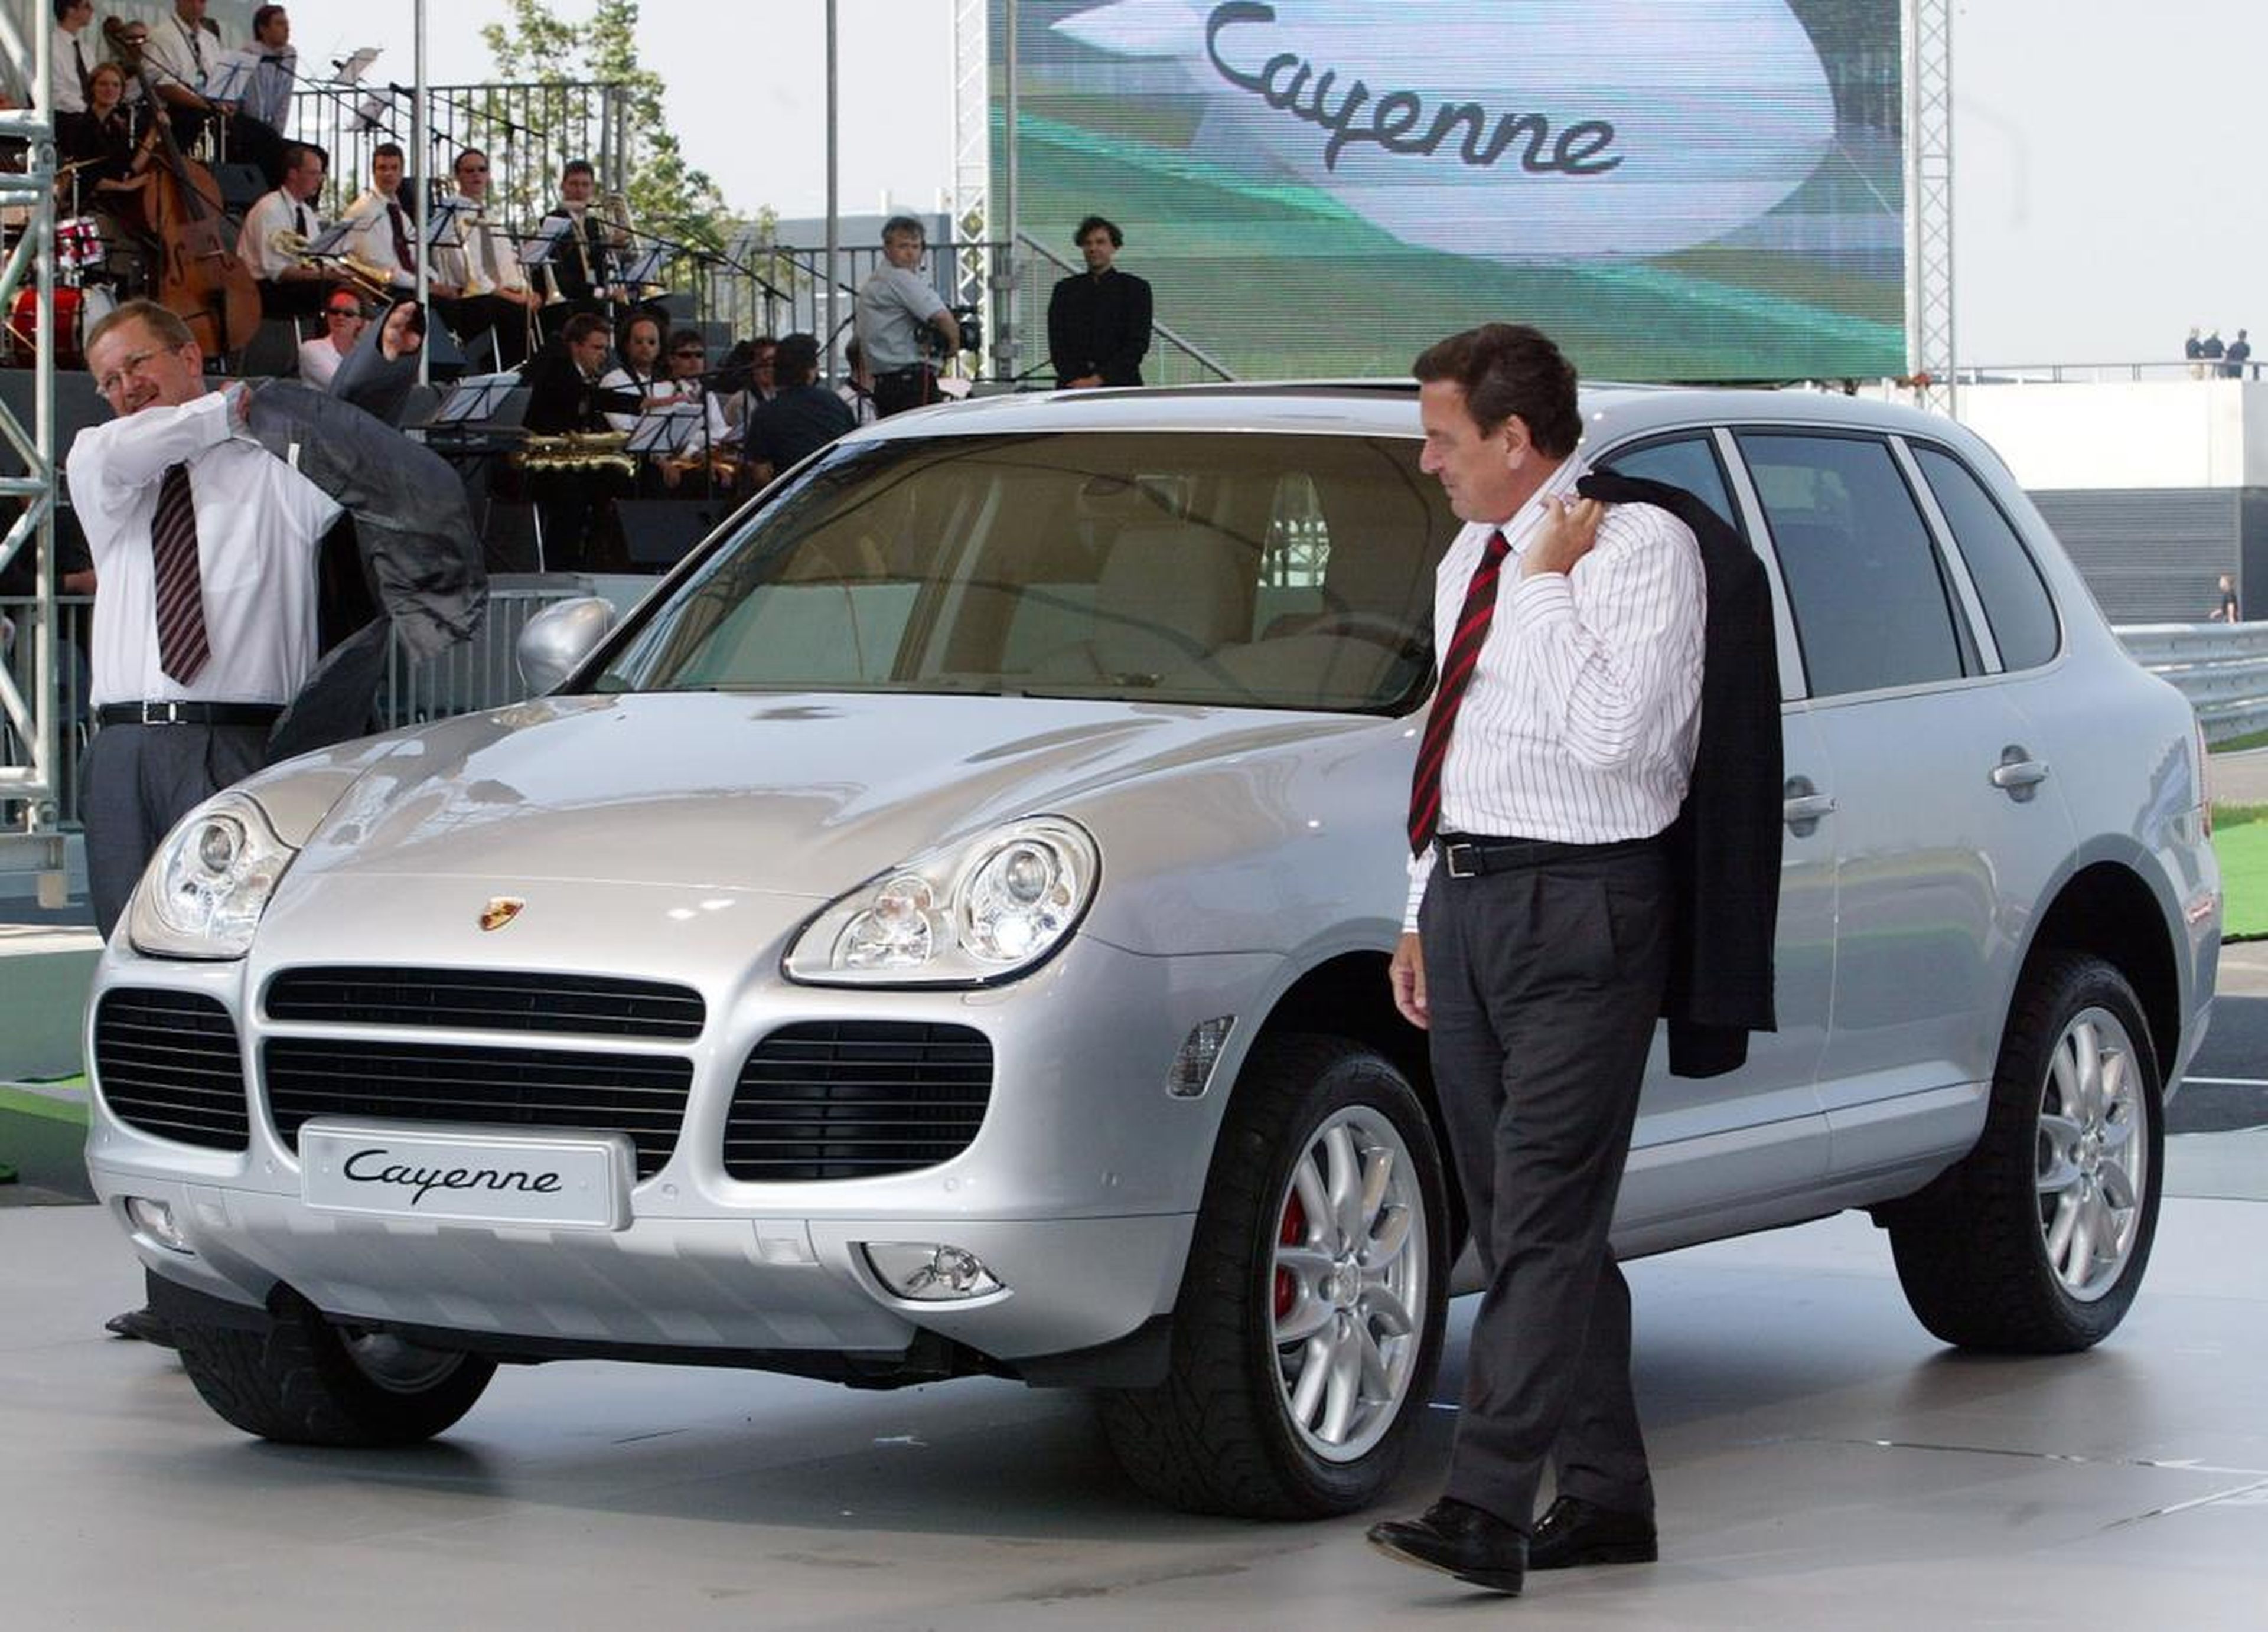 The 2000s: Porsche Cayenne